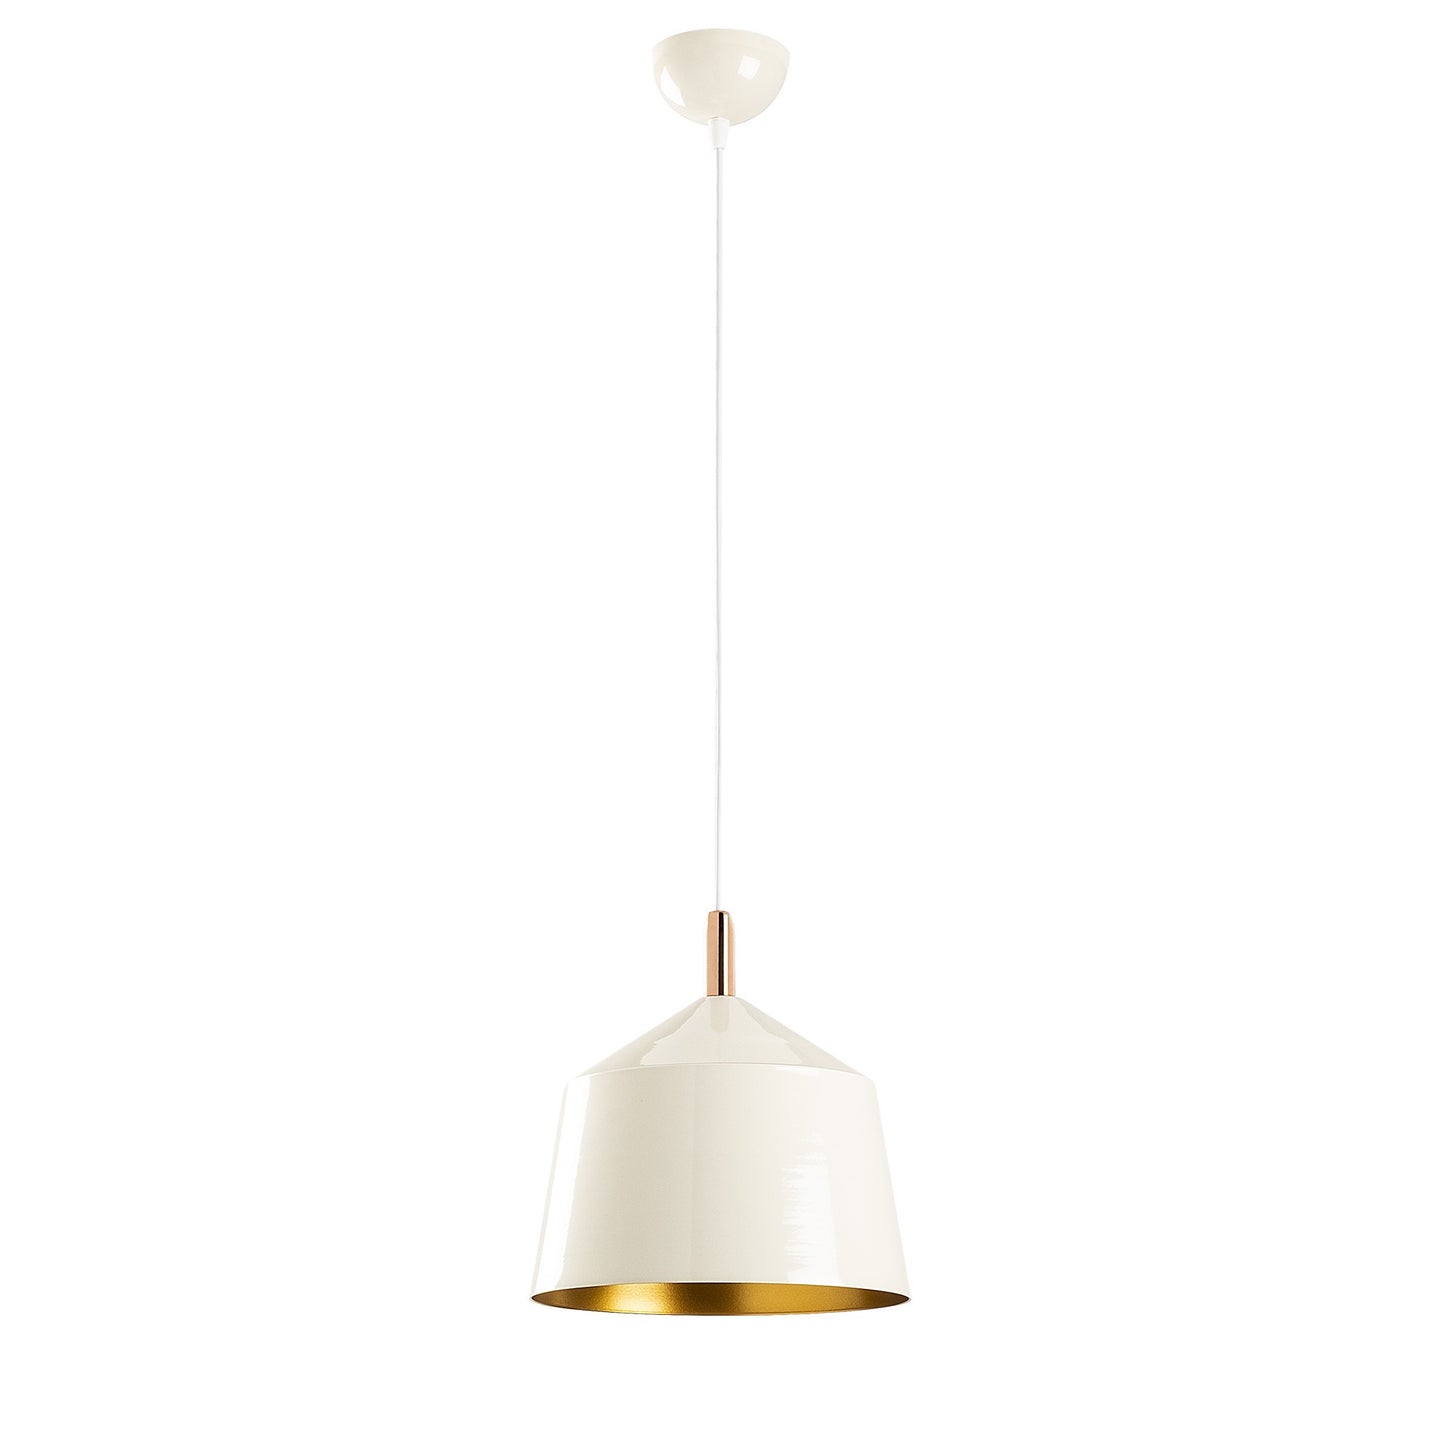 Loftlampe Saglam - 3725 - Hvid og guld/kobber